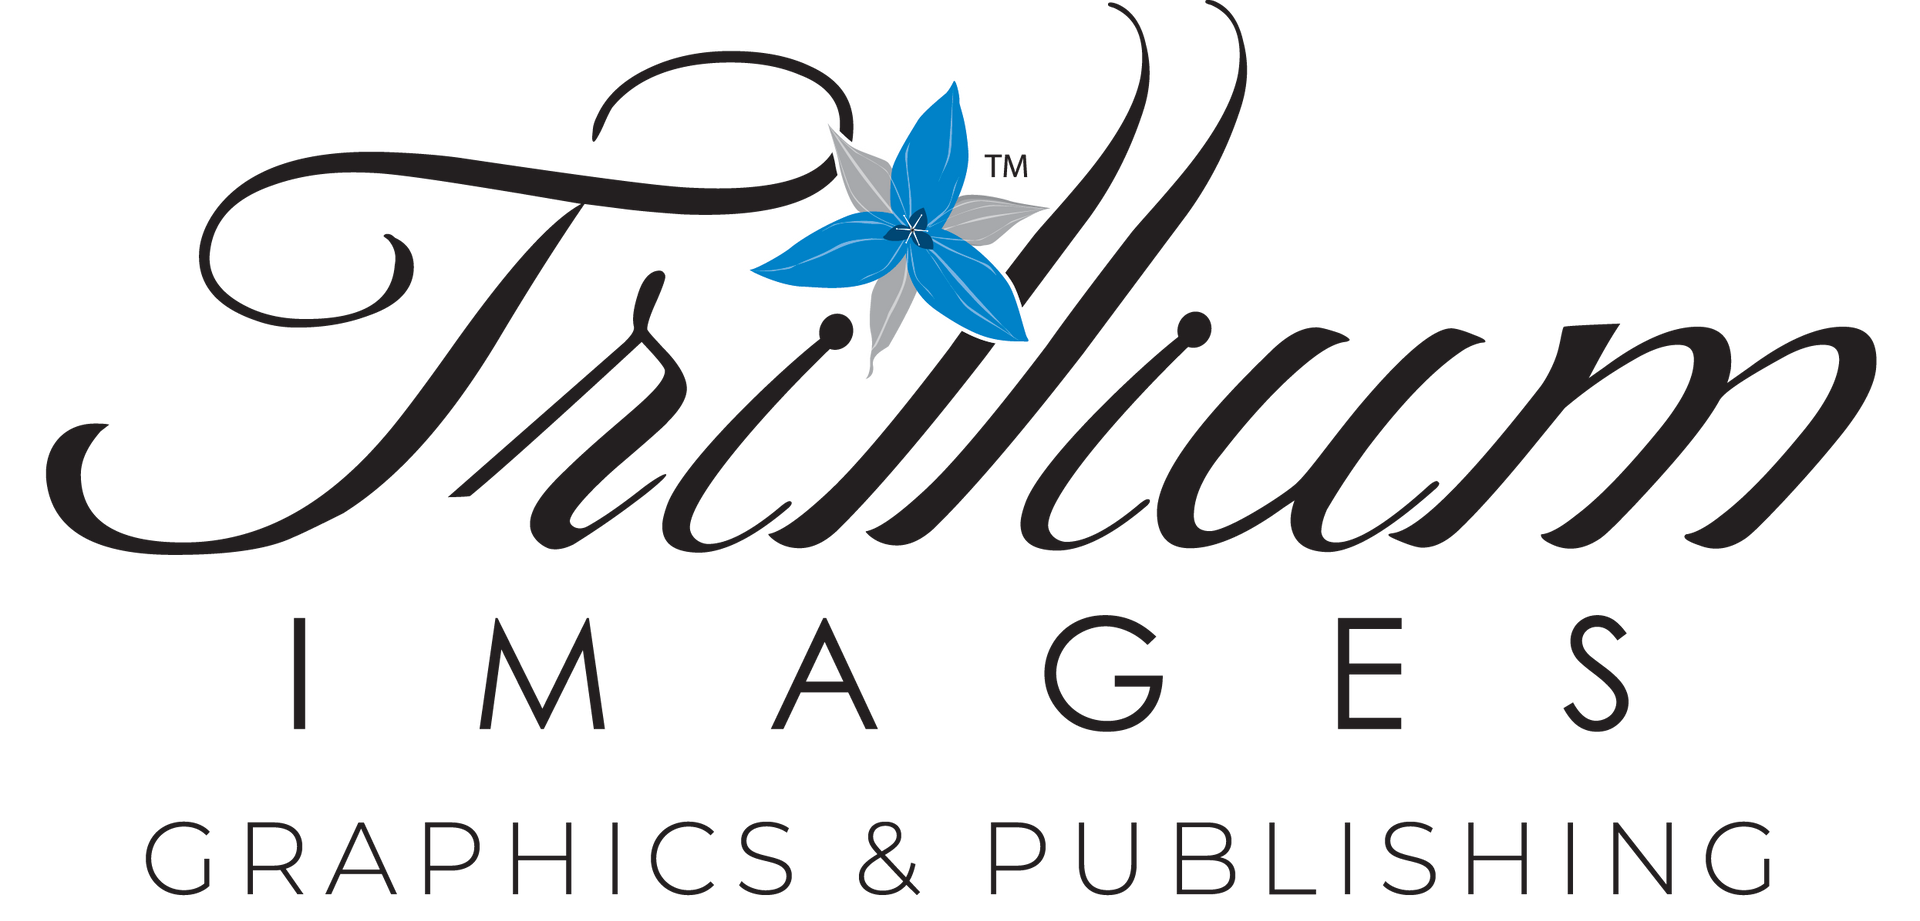 Trillium Images Graphic Design and Publishing